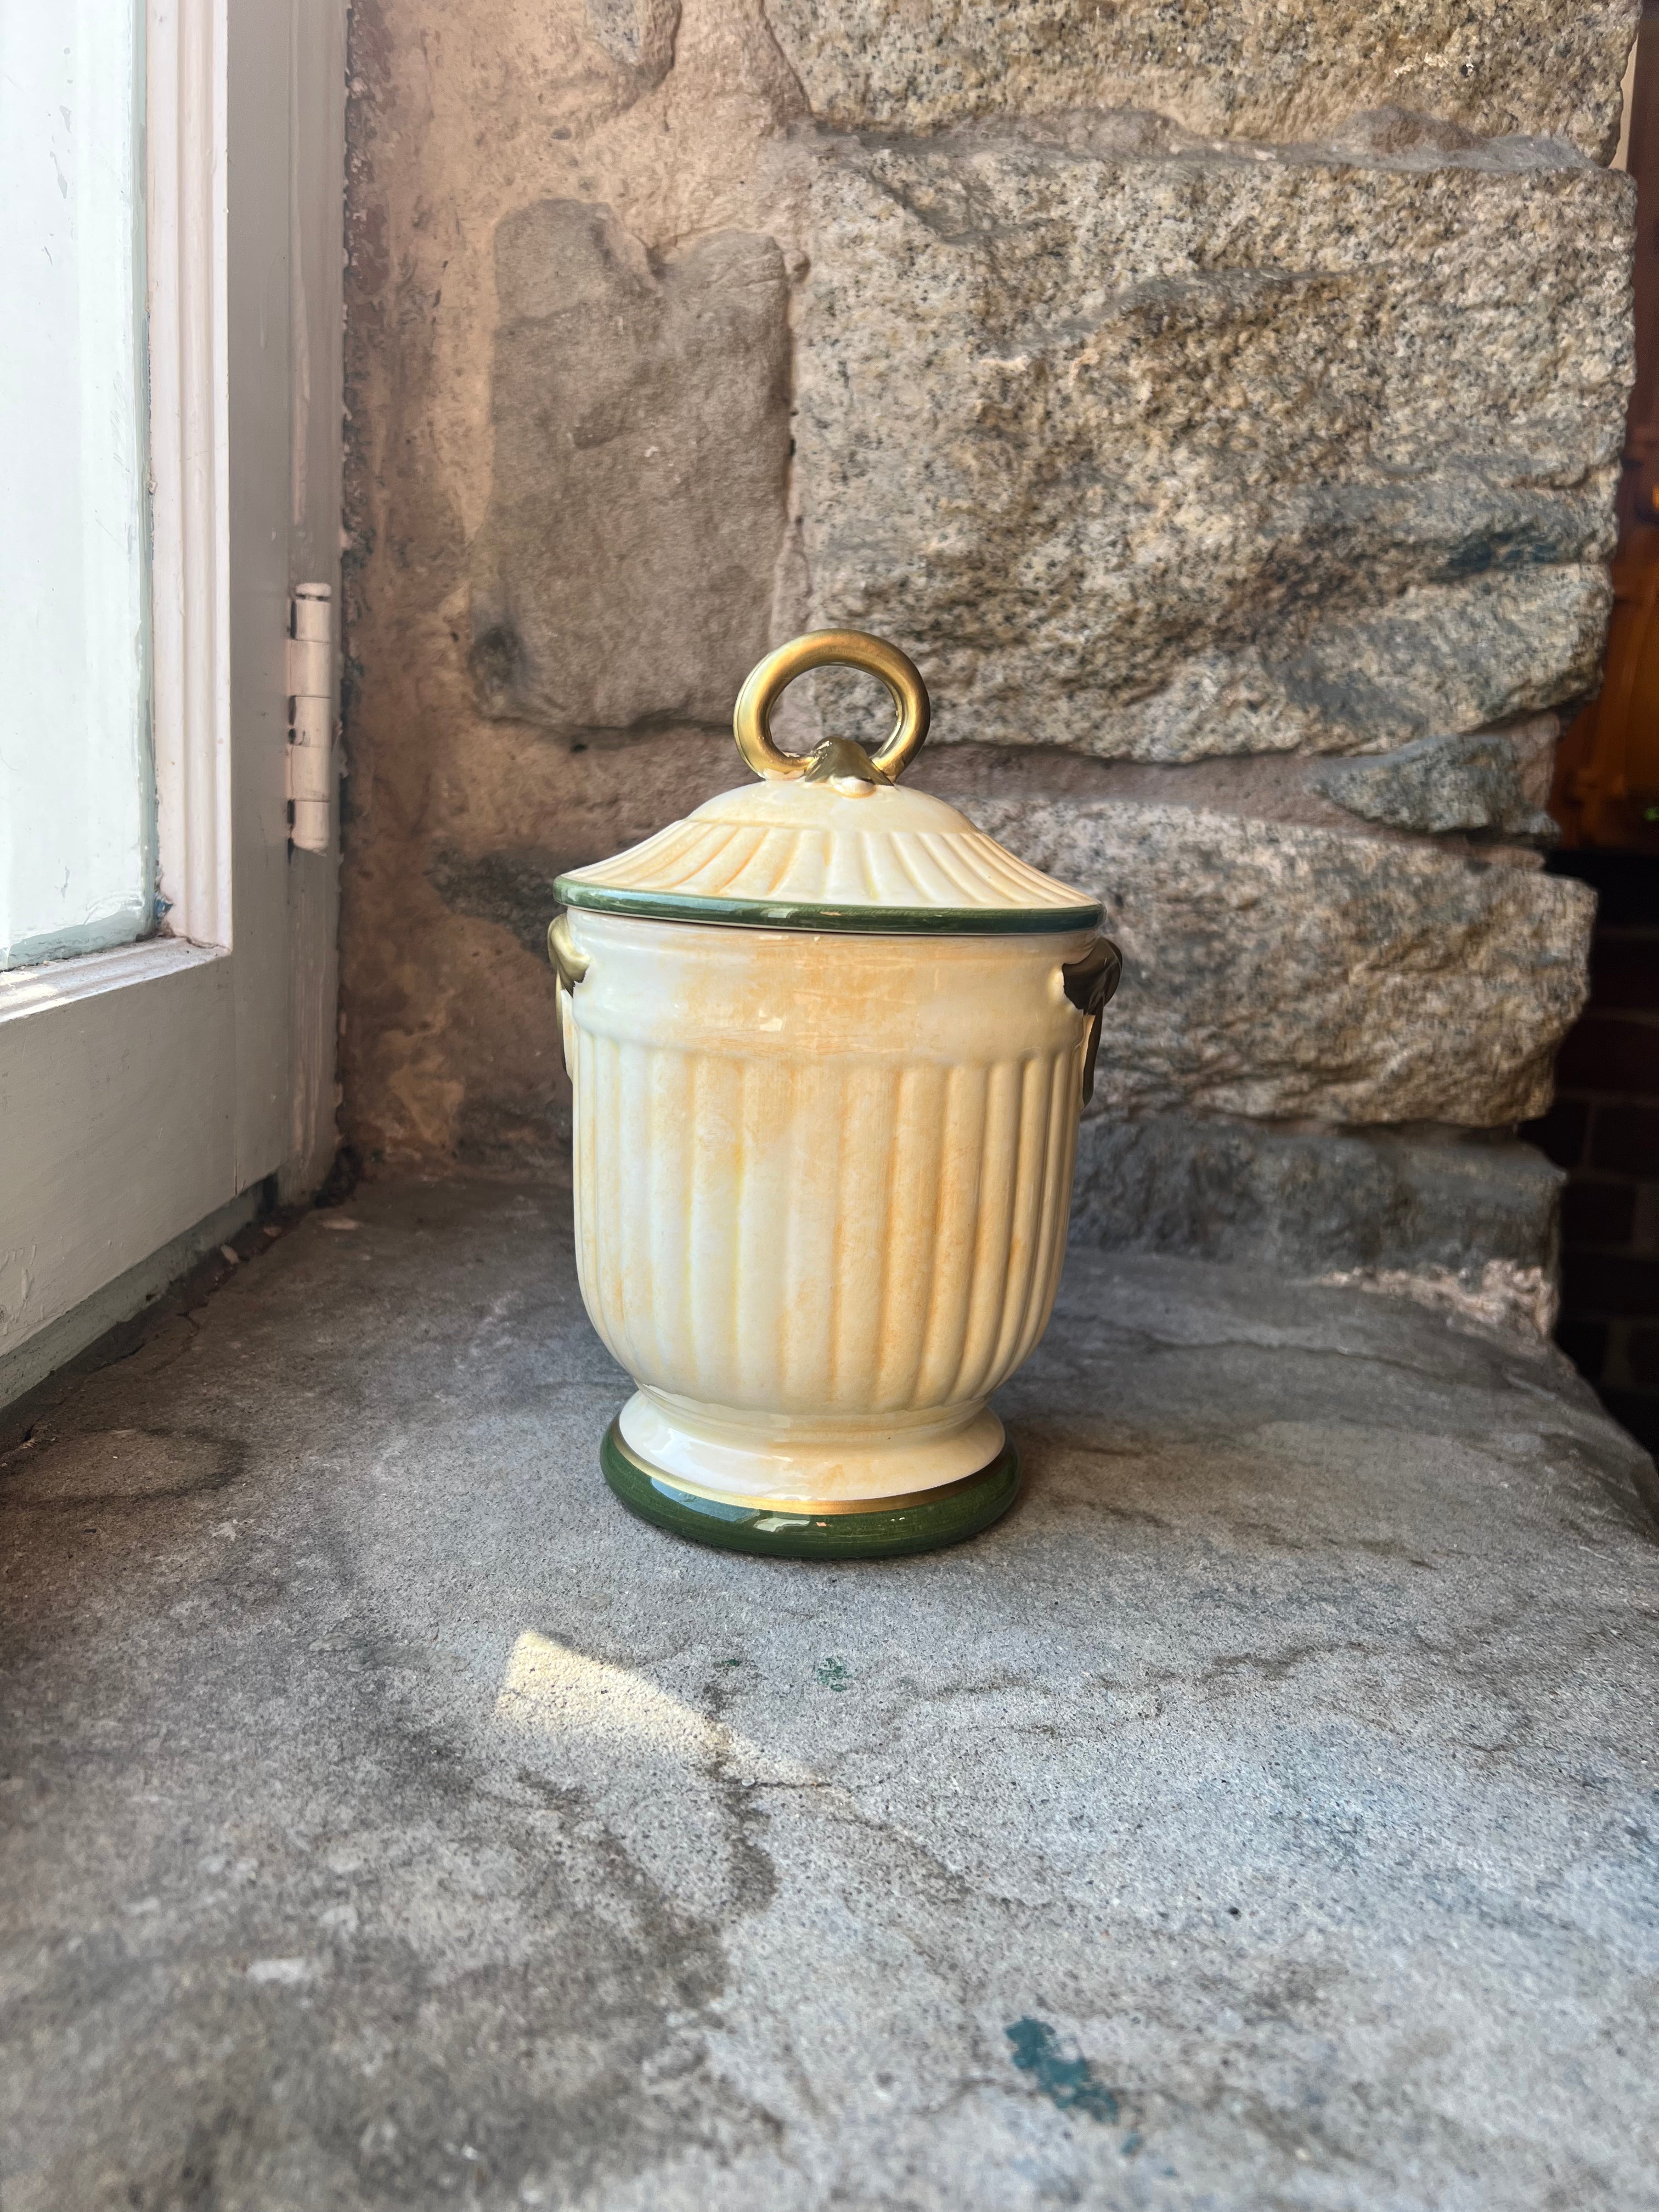 Ceramic Lidded Jar